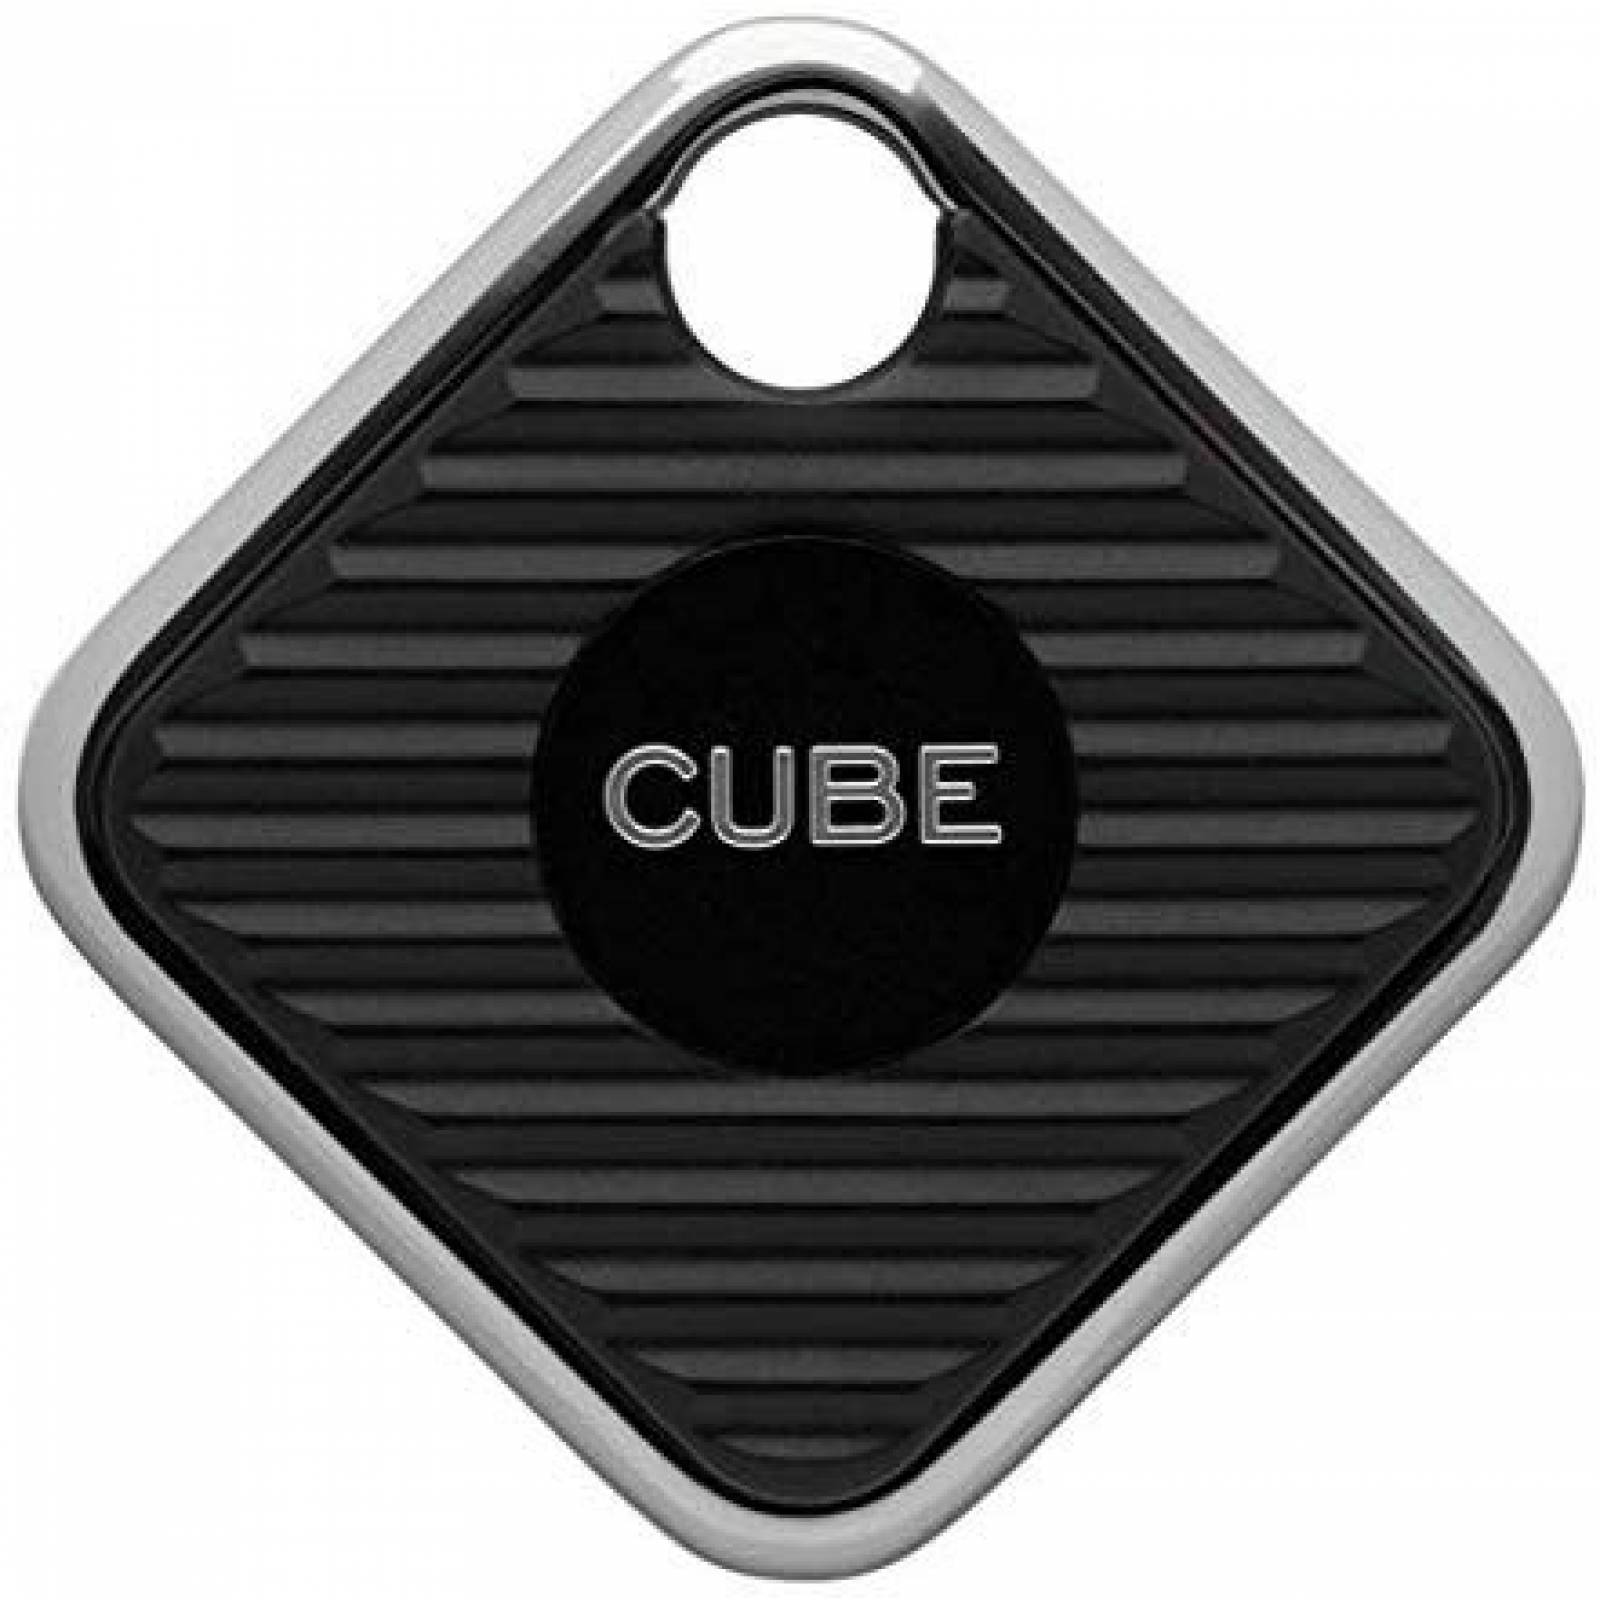 Localizador de llaves Cube Pro 2 unidades -Negro